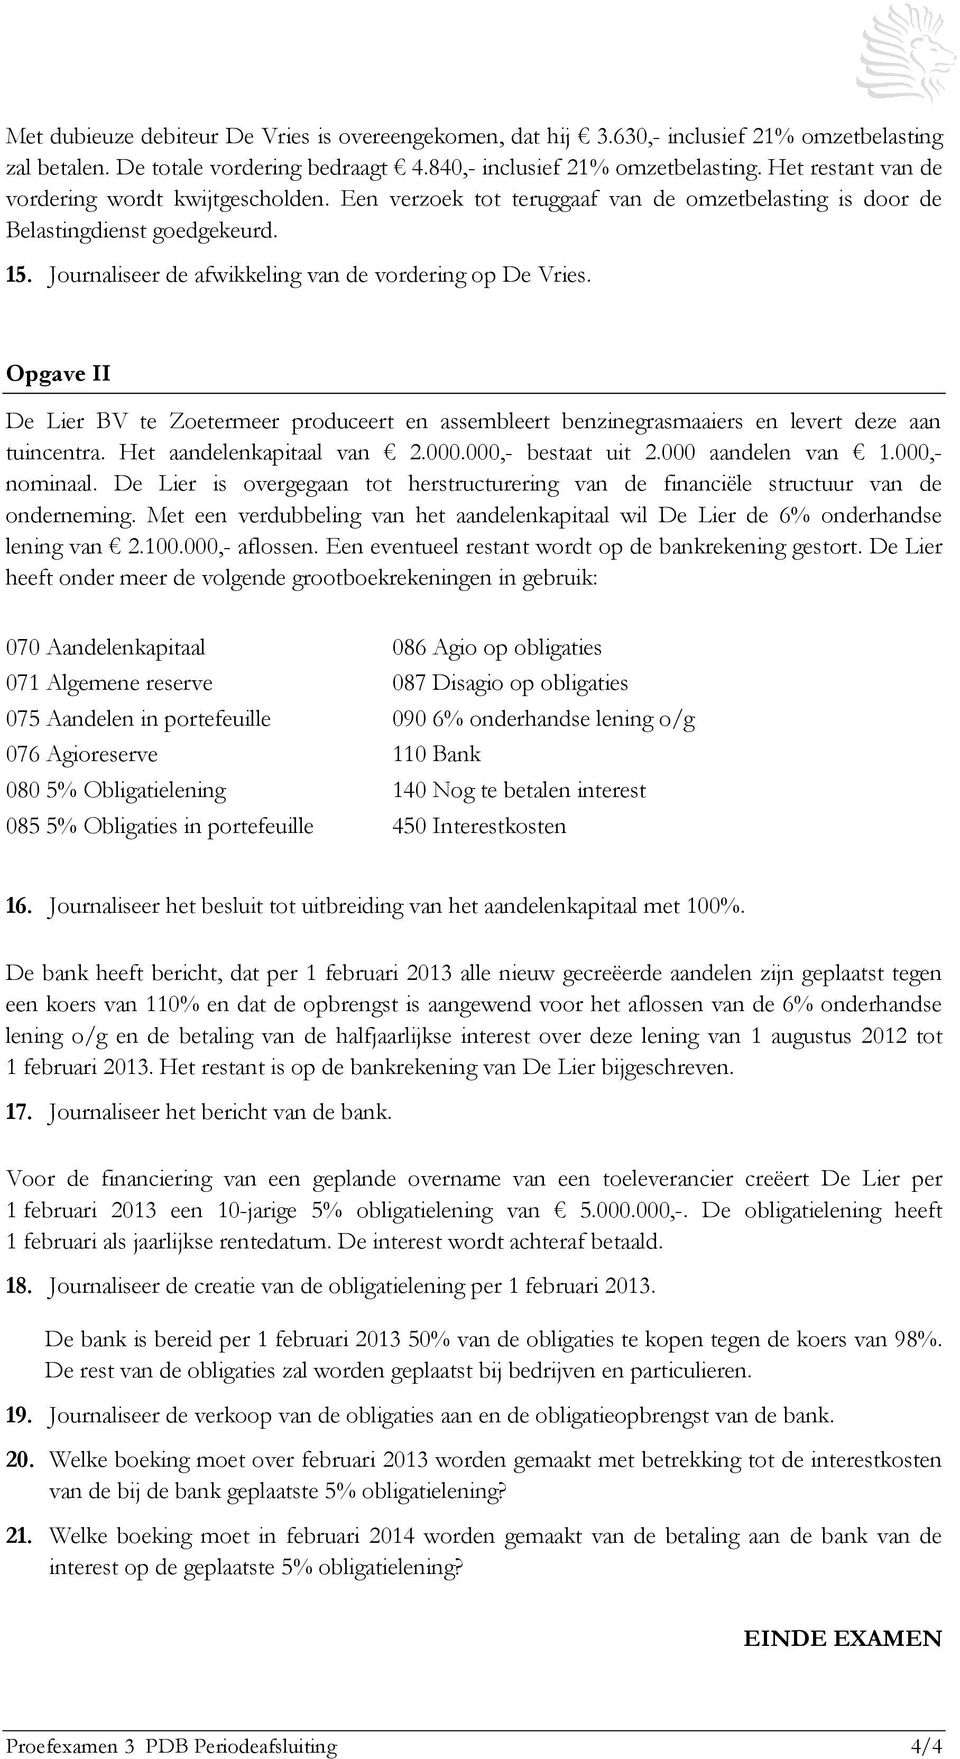 Journaliseer de afwikkeling van de vordering op De Vries. Opgave II De Lier BV te Zoetermeer produceert en assembleert benzinegrasmaaiers en levert deze aan tuincentra. Het aandelenkapitaal van 2.000.